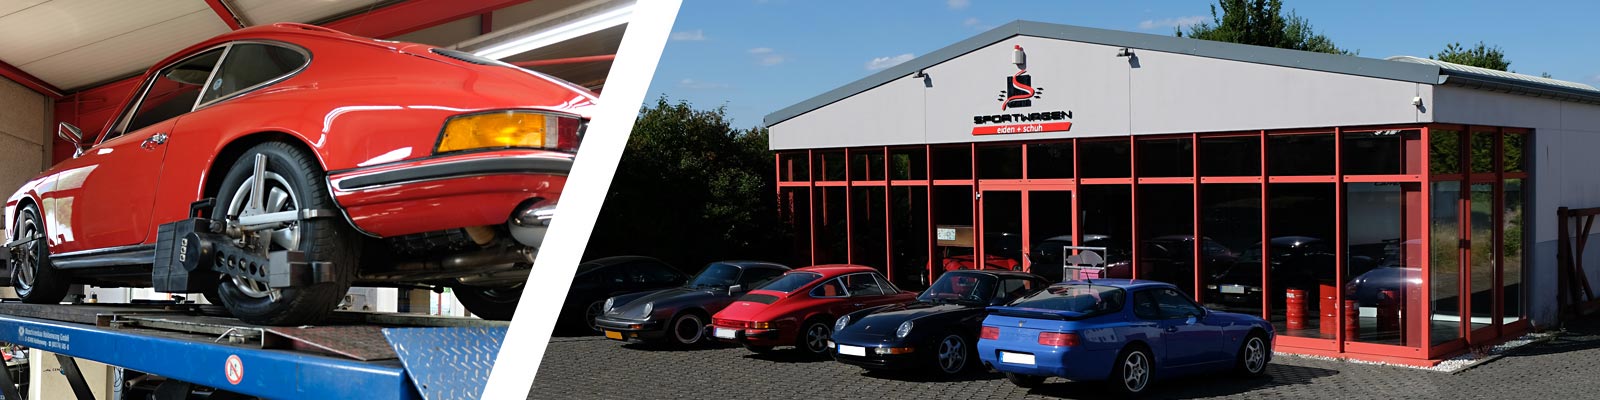 Banner Werkstatt von Außen und Porsche in Reparatur